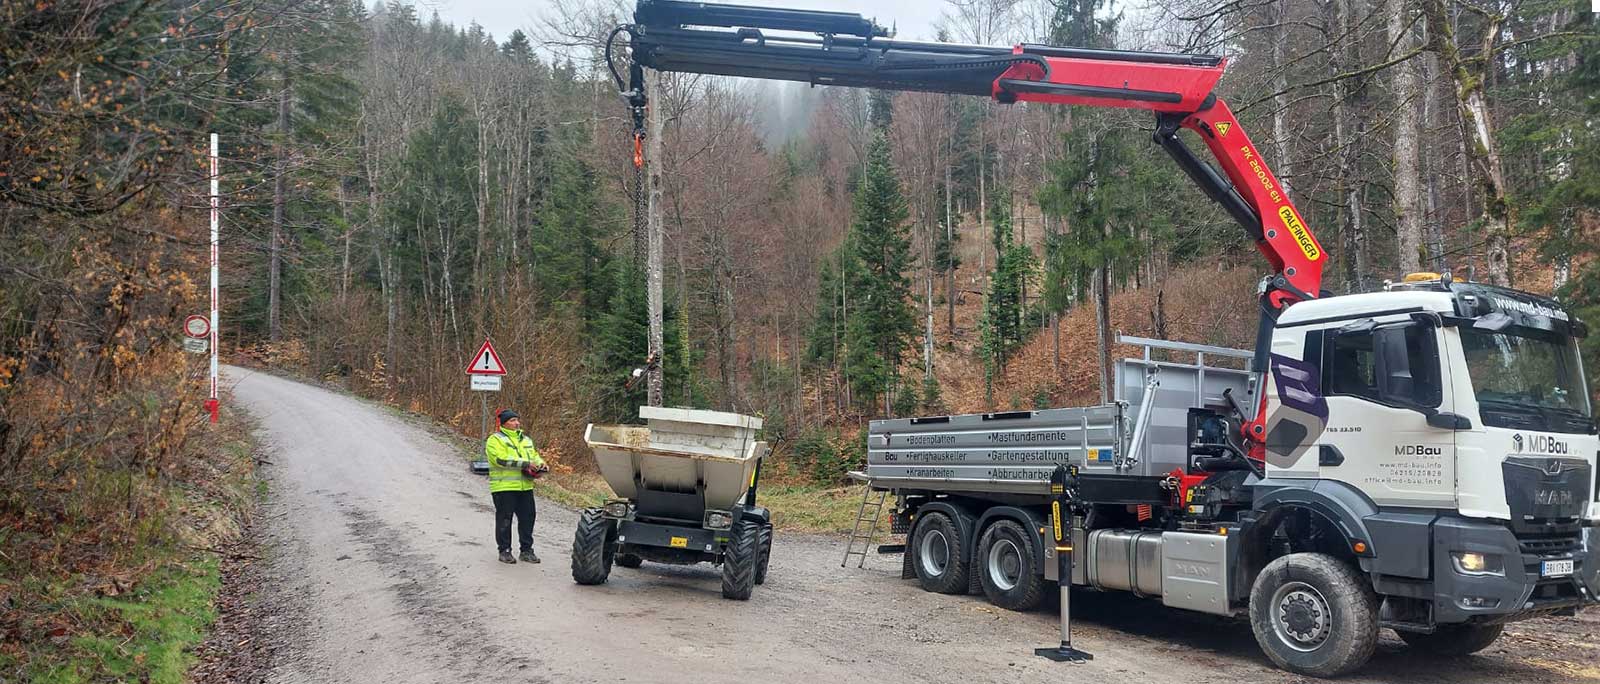 MD Bau GmbH bei Durchführung von Transport und Kranarbeiten in einem Waldgebiet in Österreich